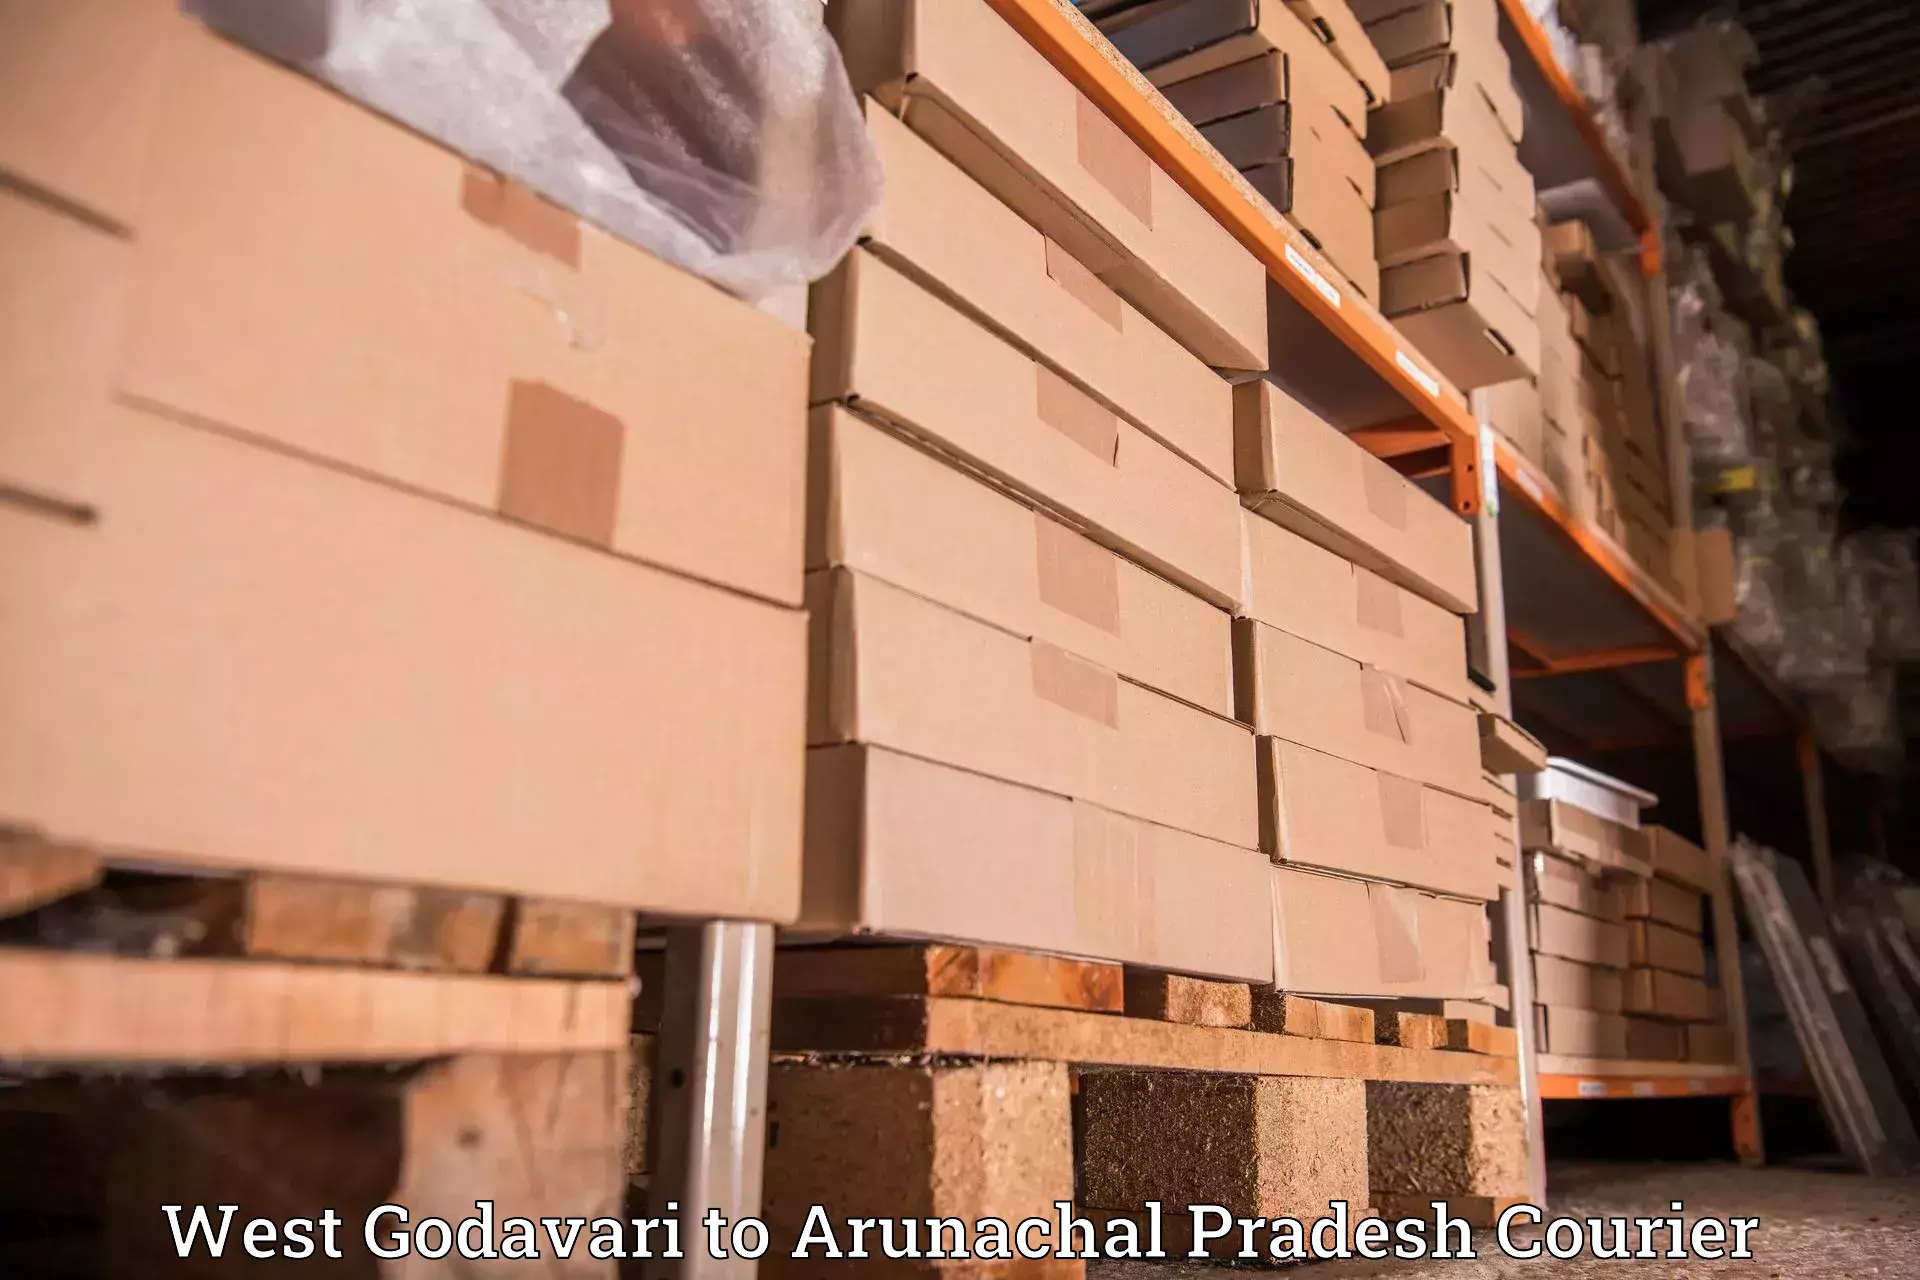 Doorstep delivery service West Godavari to Arunachal Pradesh